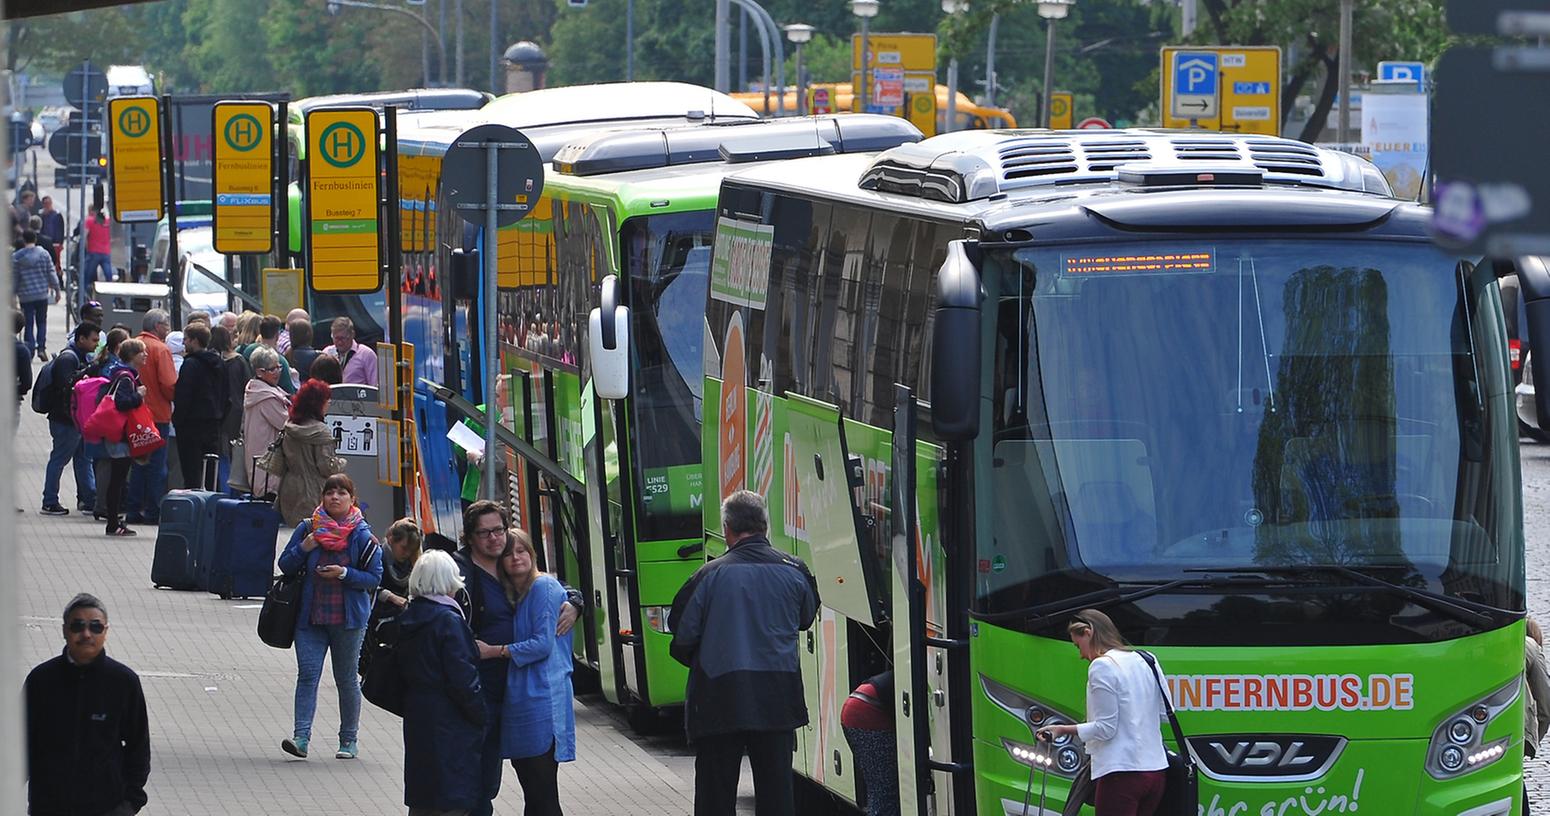 2013 wurde der Fernbusmarkt in Deutschland liberalisiert. Im letzten Jahr nutzten bereits 20 Millionen Reisende die zumeist sehr günstigen Angebote, das waren rund 25 Prozent mehr als noch 2014.